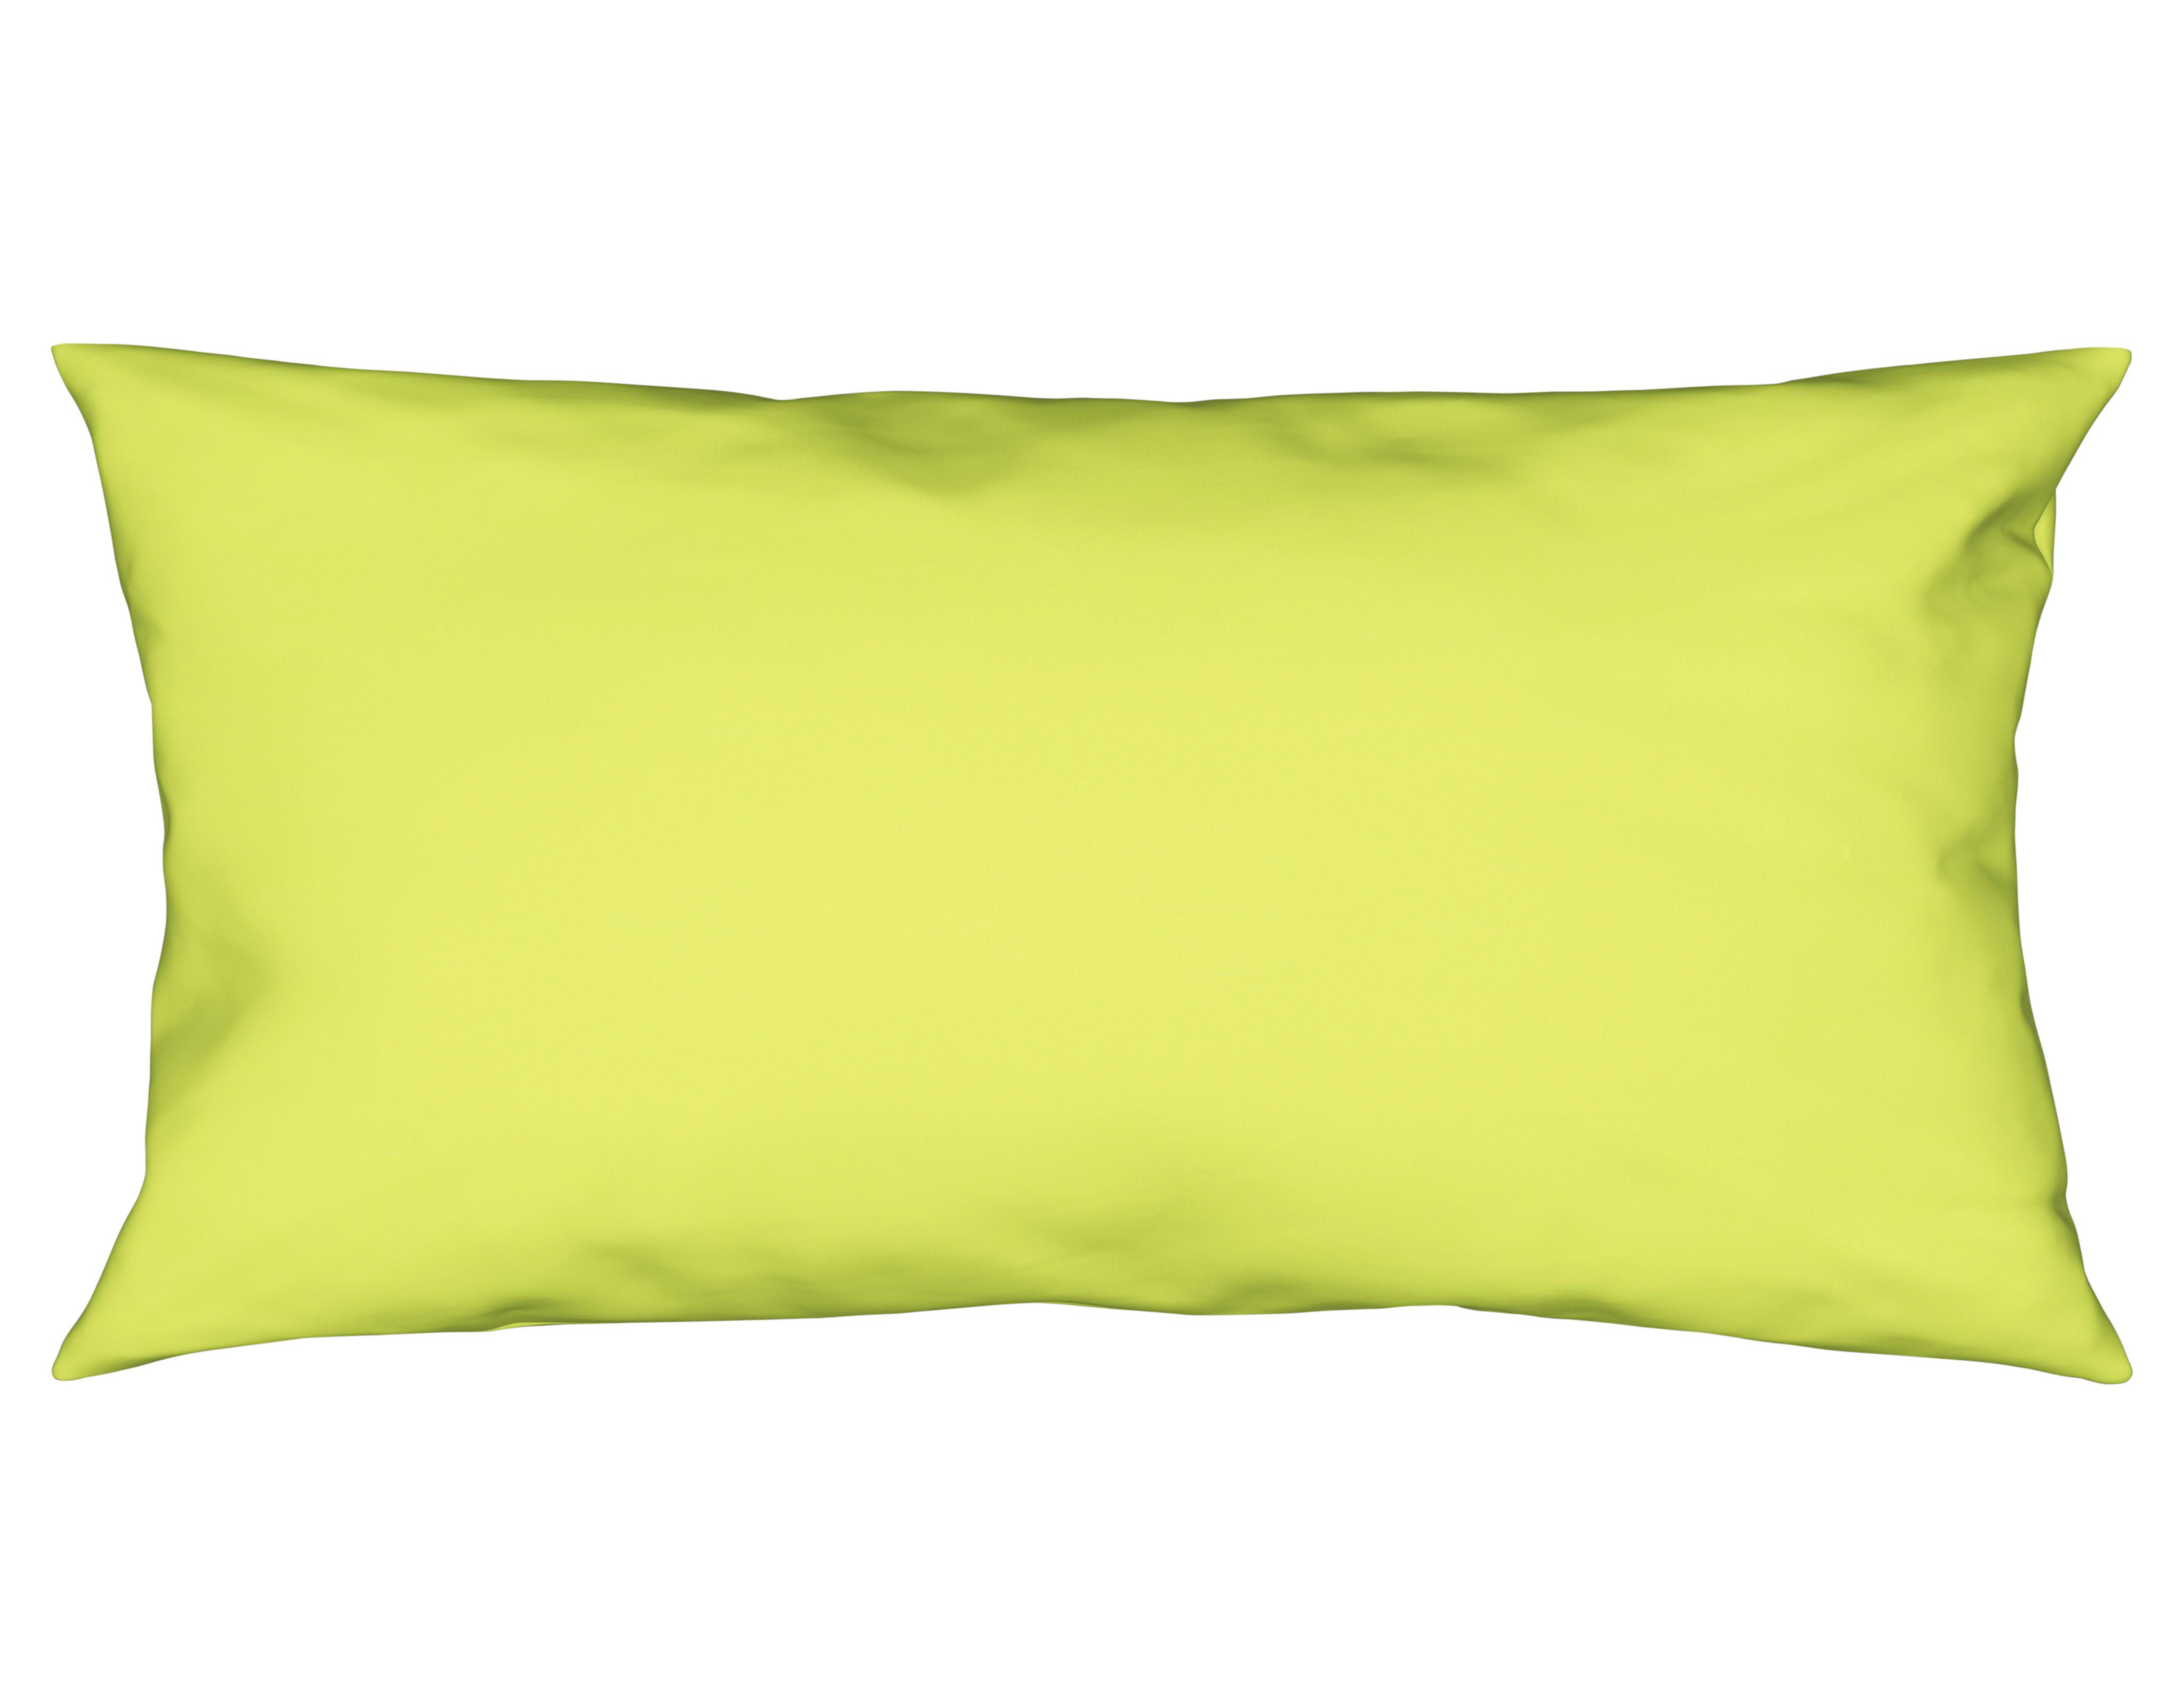 Kissenhülle Vicky 40x80 cm Jersey Grün + Reißverschluss - Grün, KONVENTIONELL, Textil (40/80cm) - Ondega